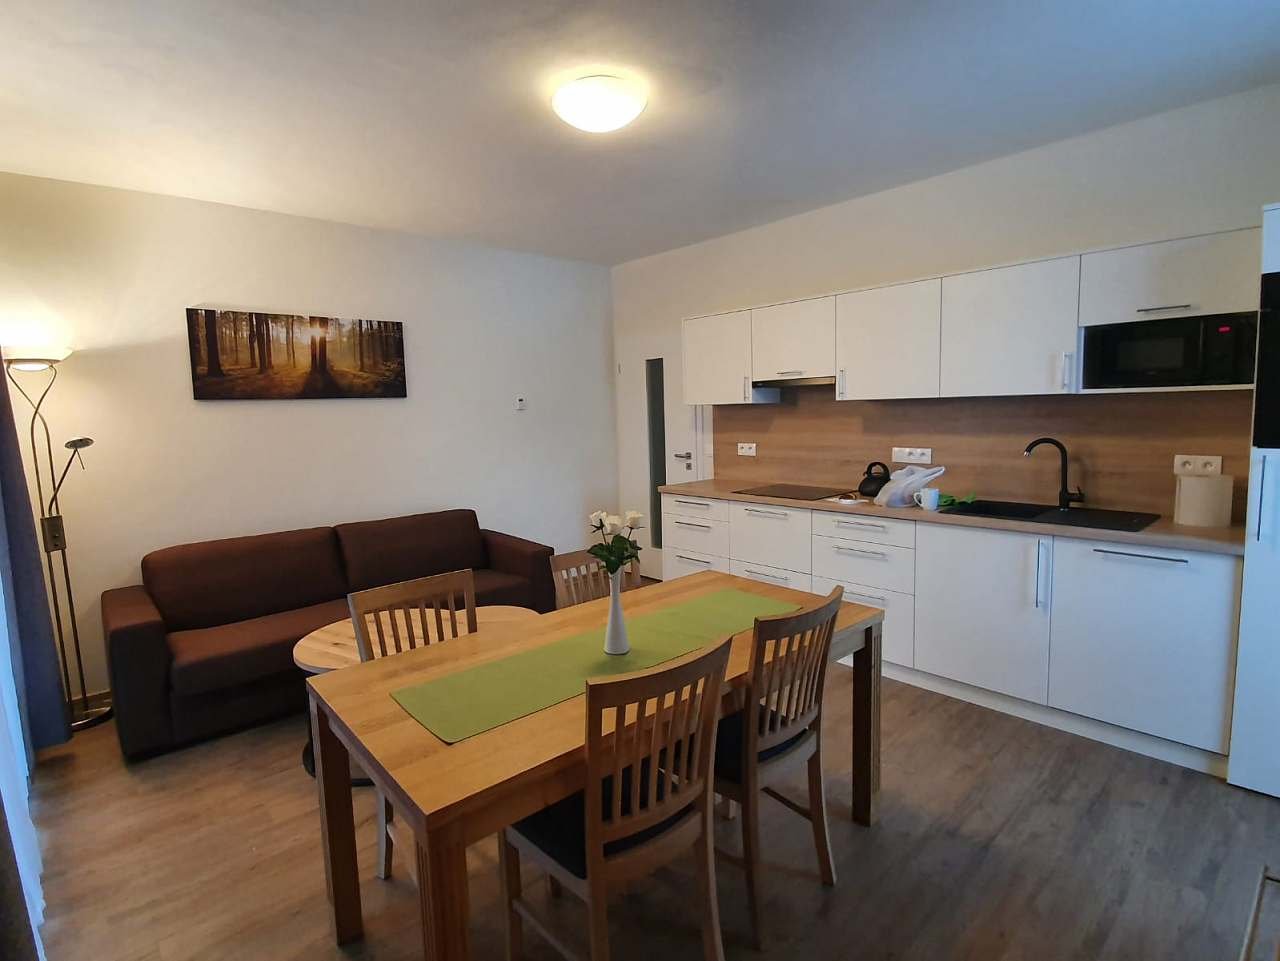 Cekový pohled na kuchyni s obývacím prostorem